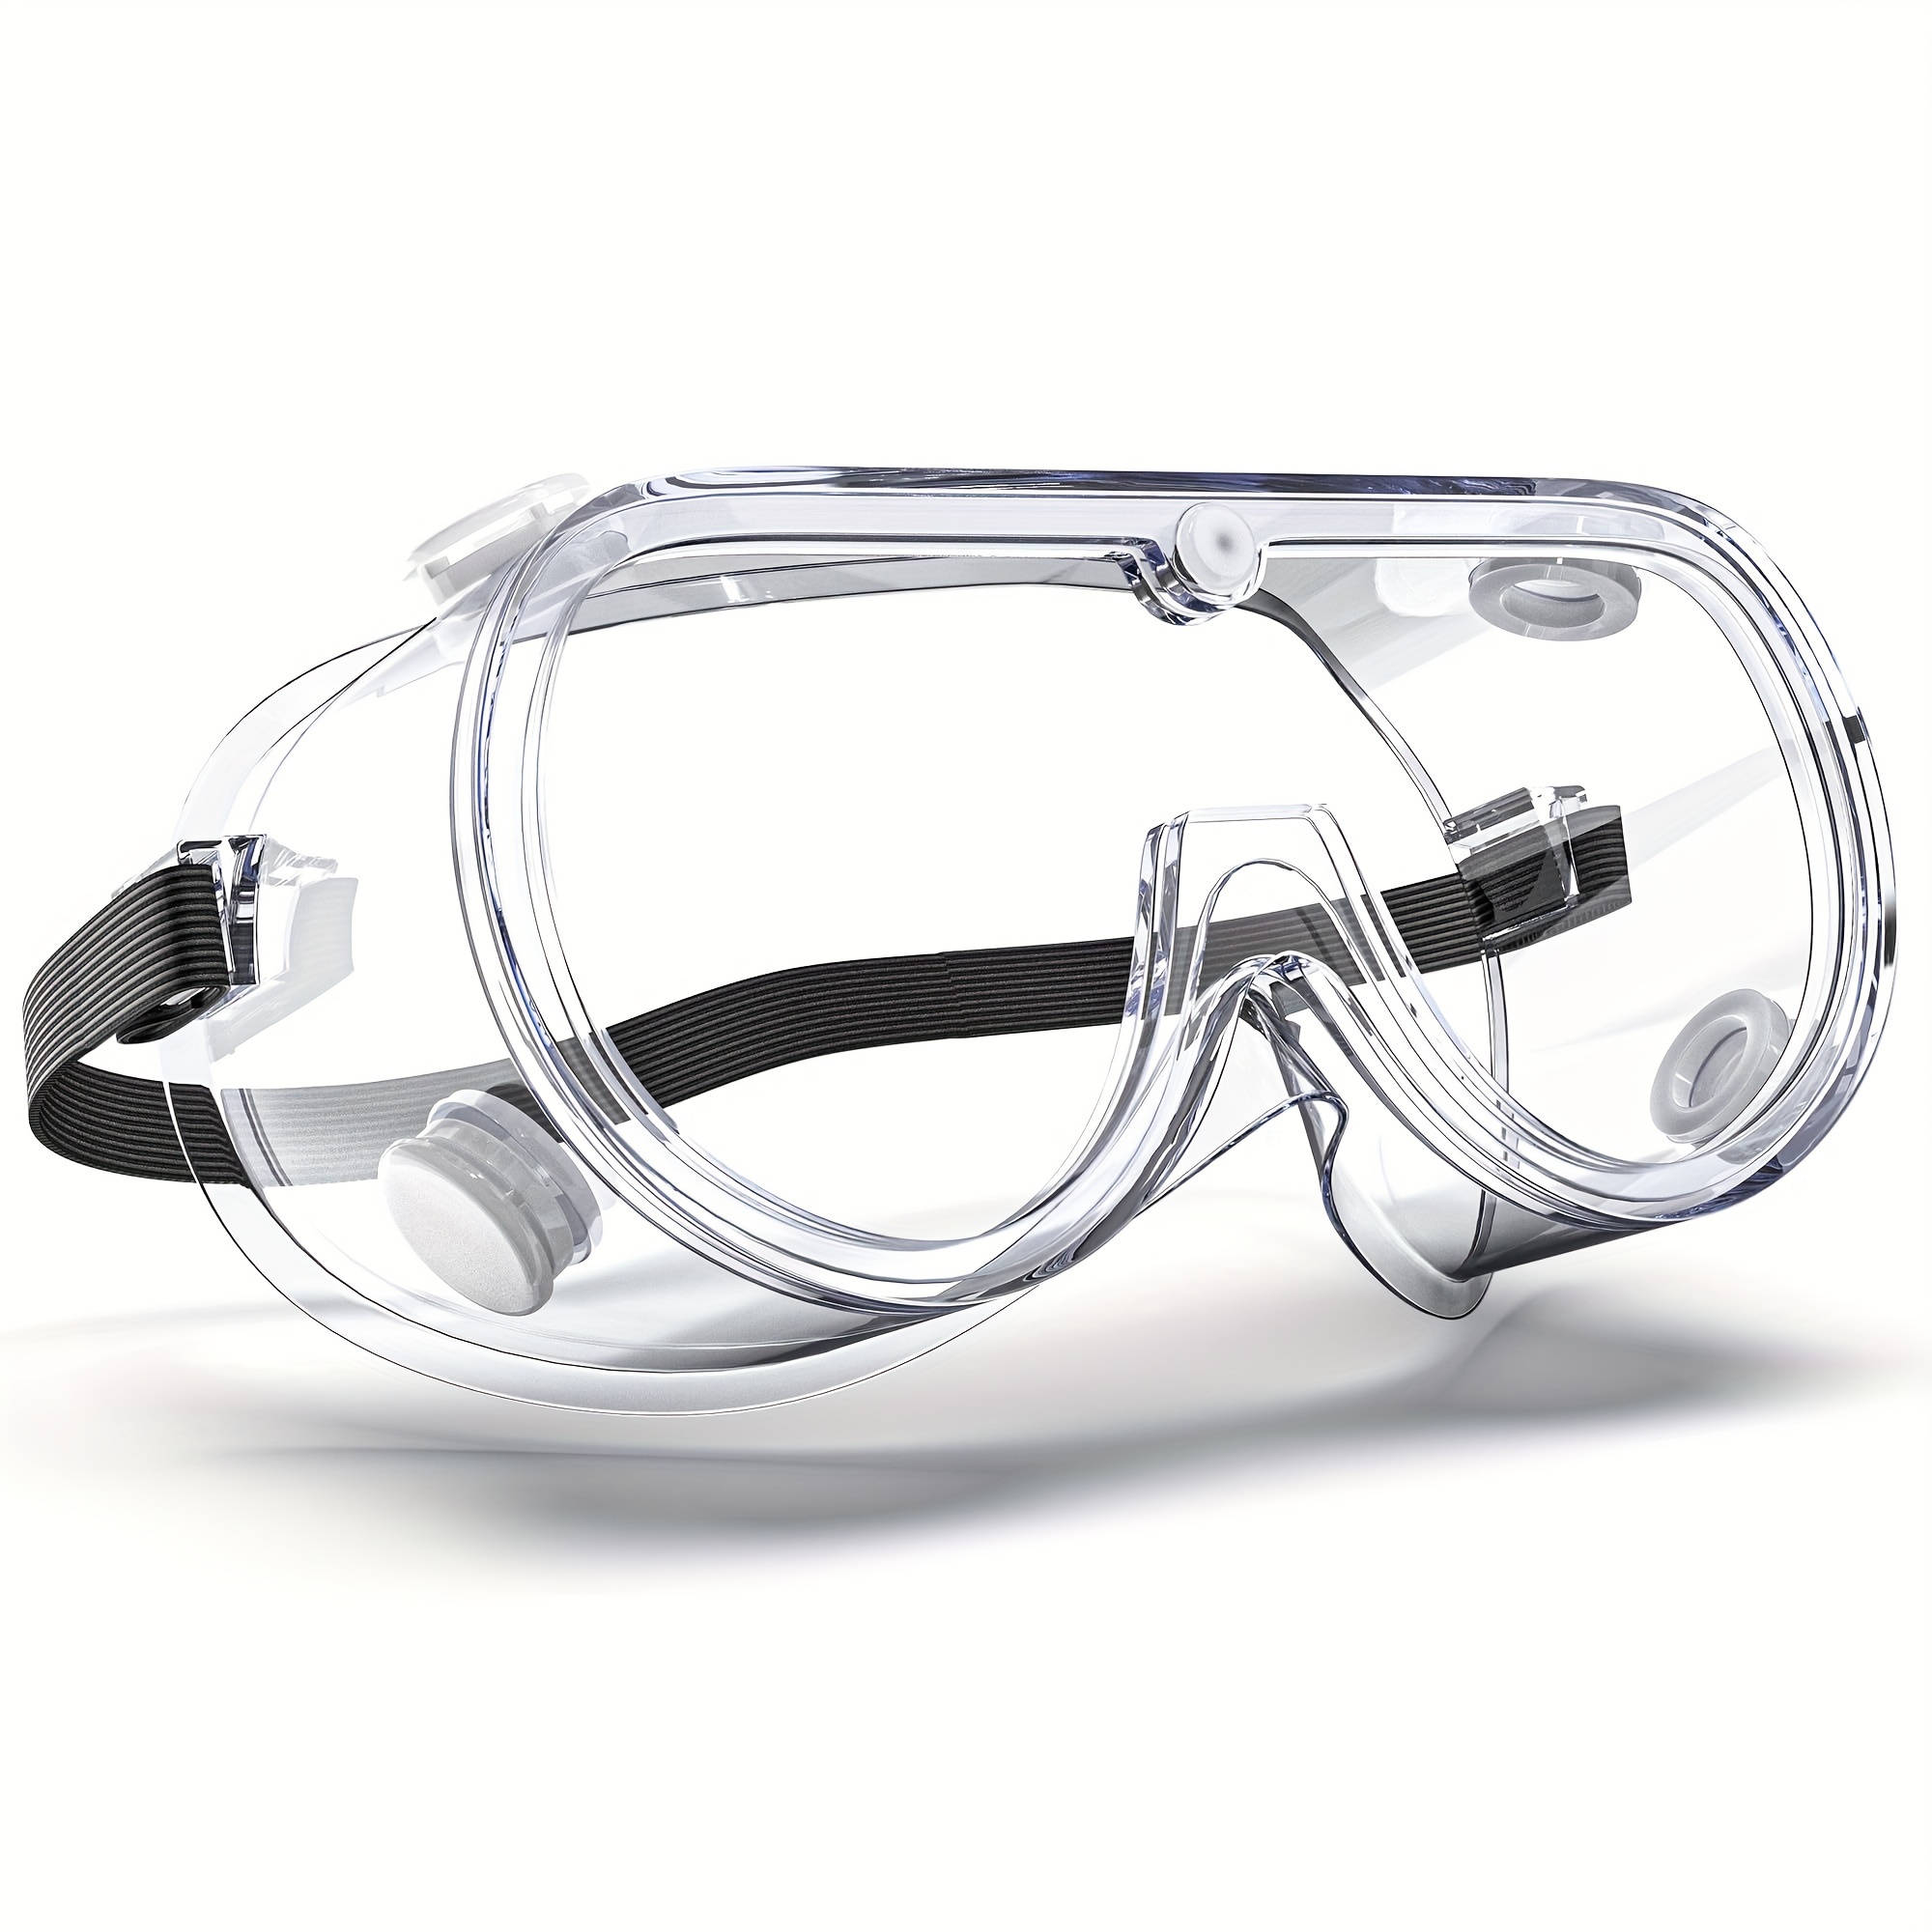 Gafas protectoras de seguridad para el trabajo, lentes industriales  antisalpicaduras, a prueba de viento y polvo, para laboratorio, pintura